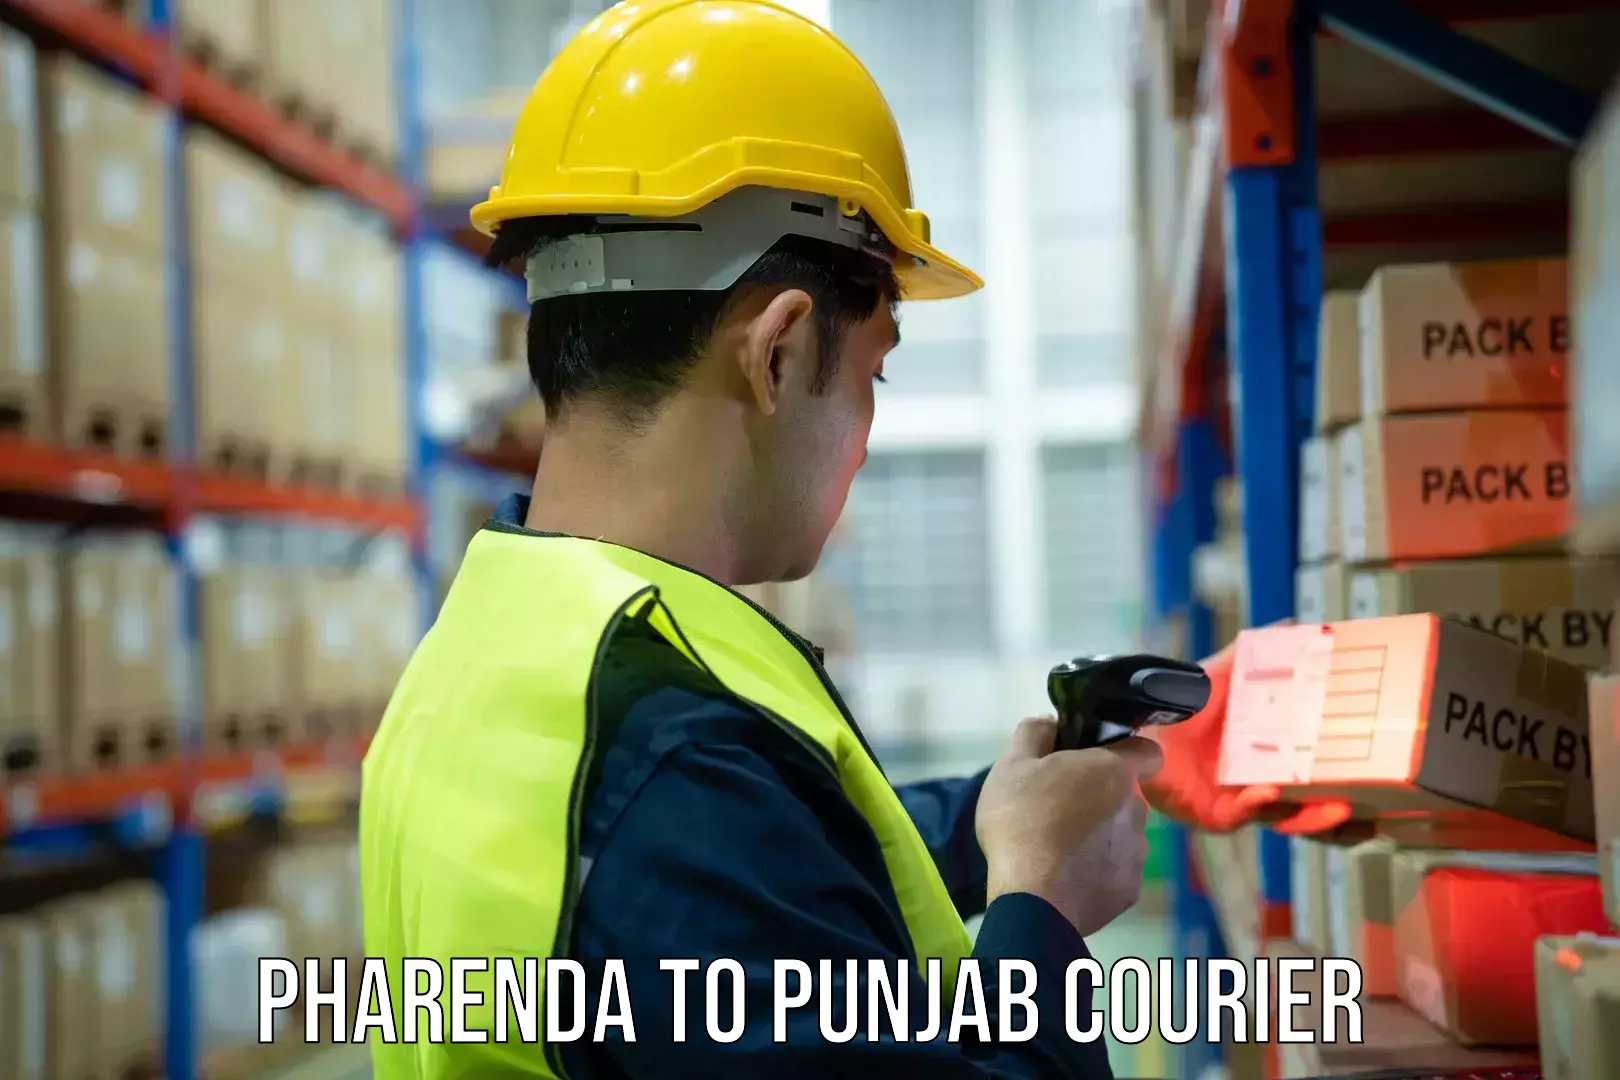 Efficient cargo services Pharenda to Punjab